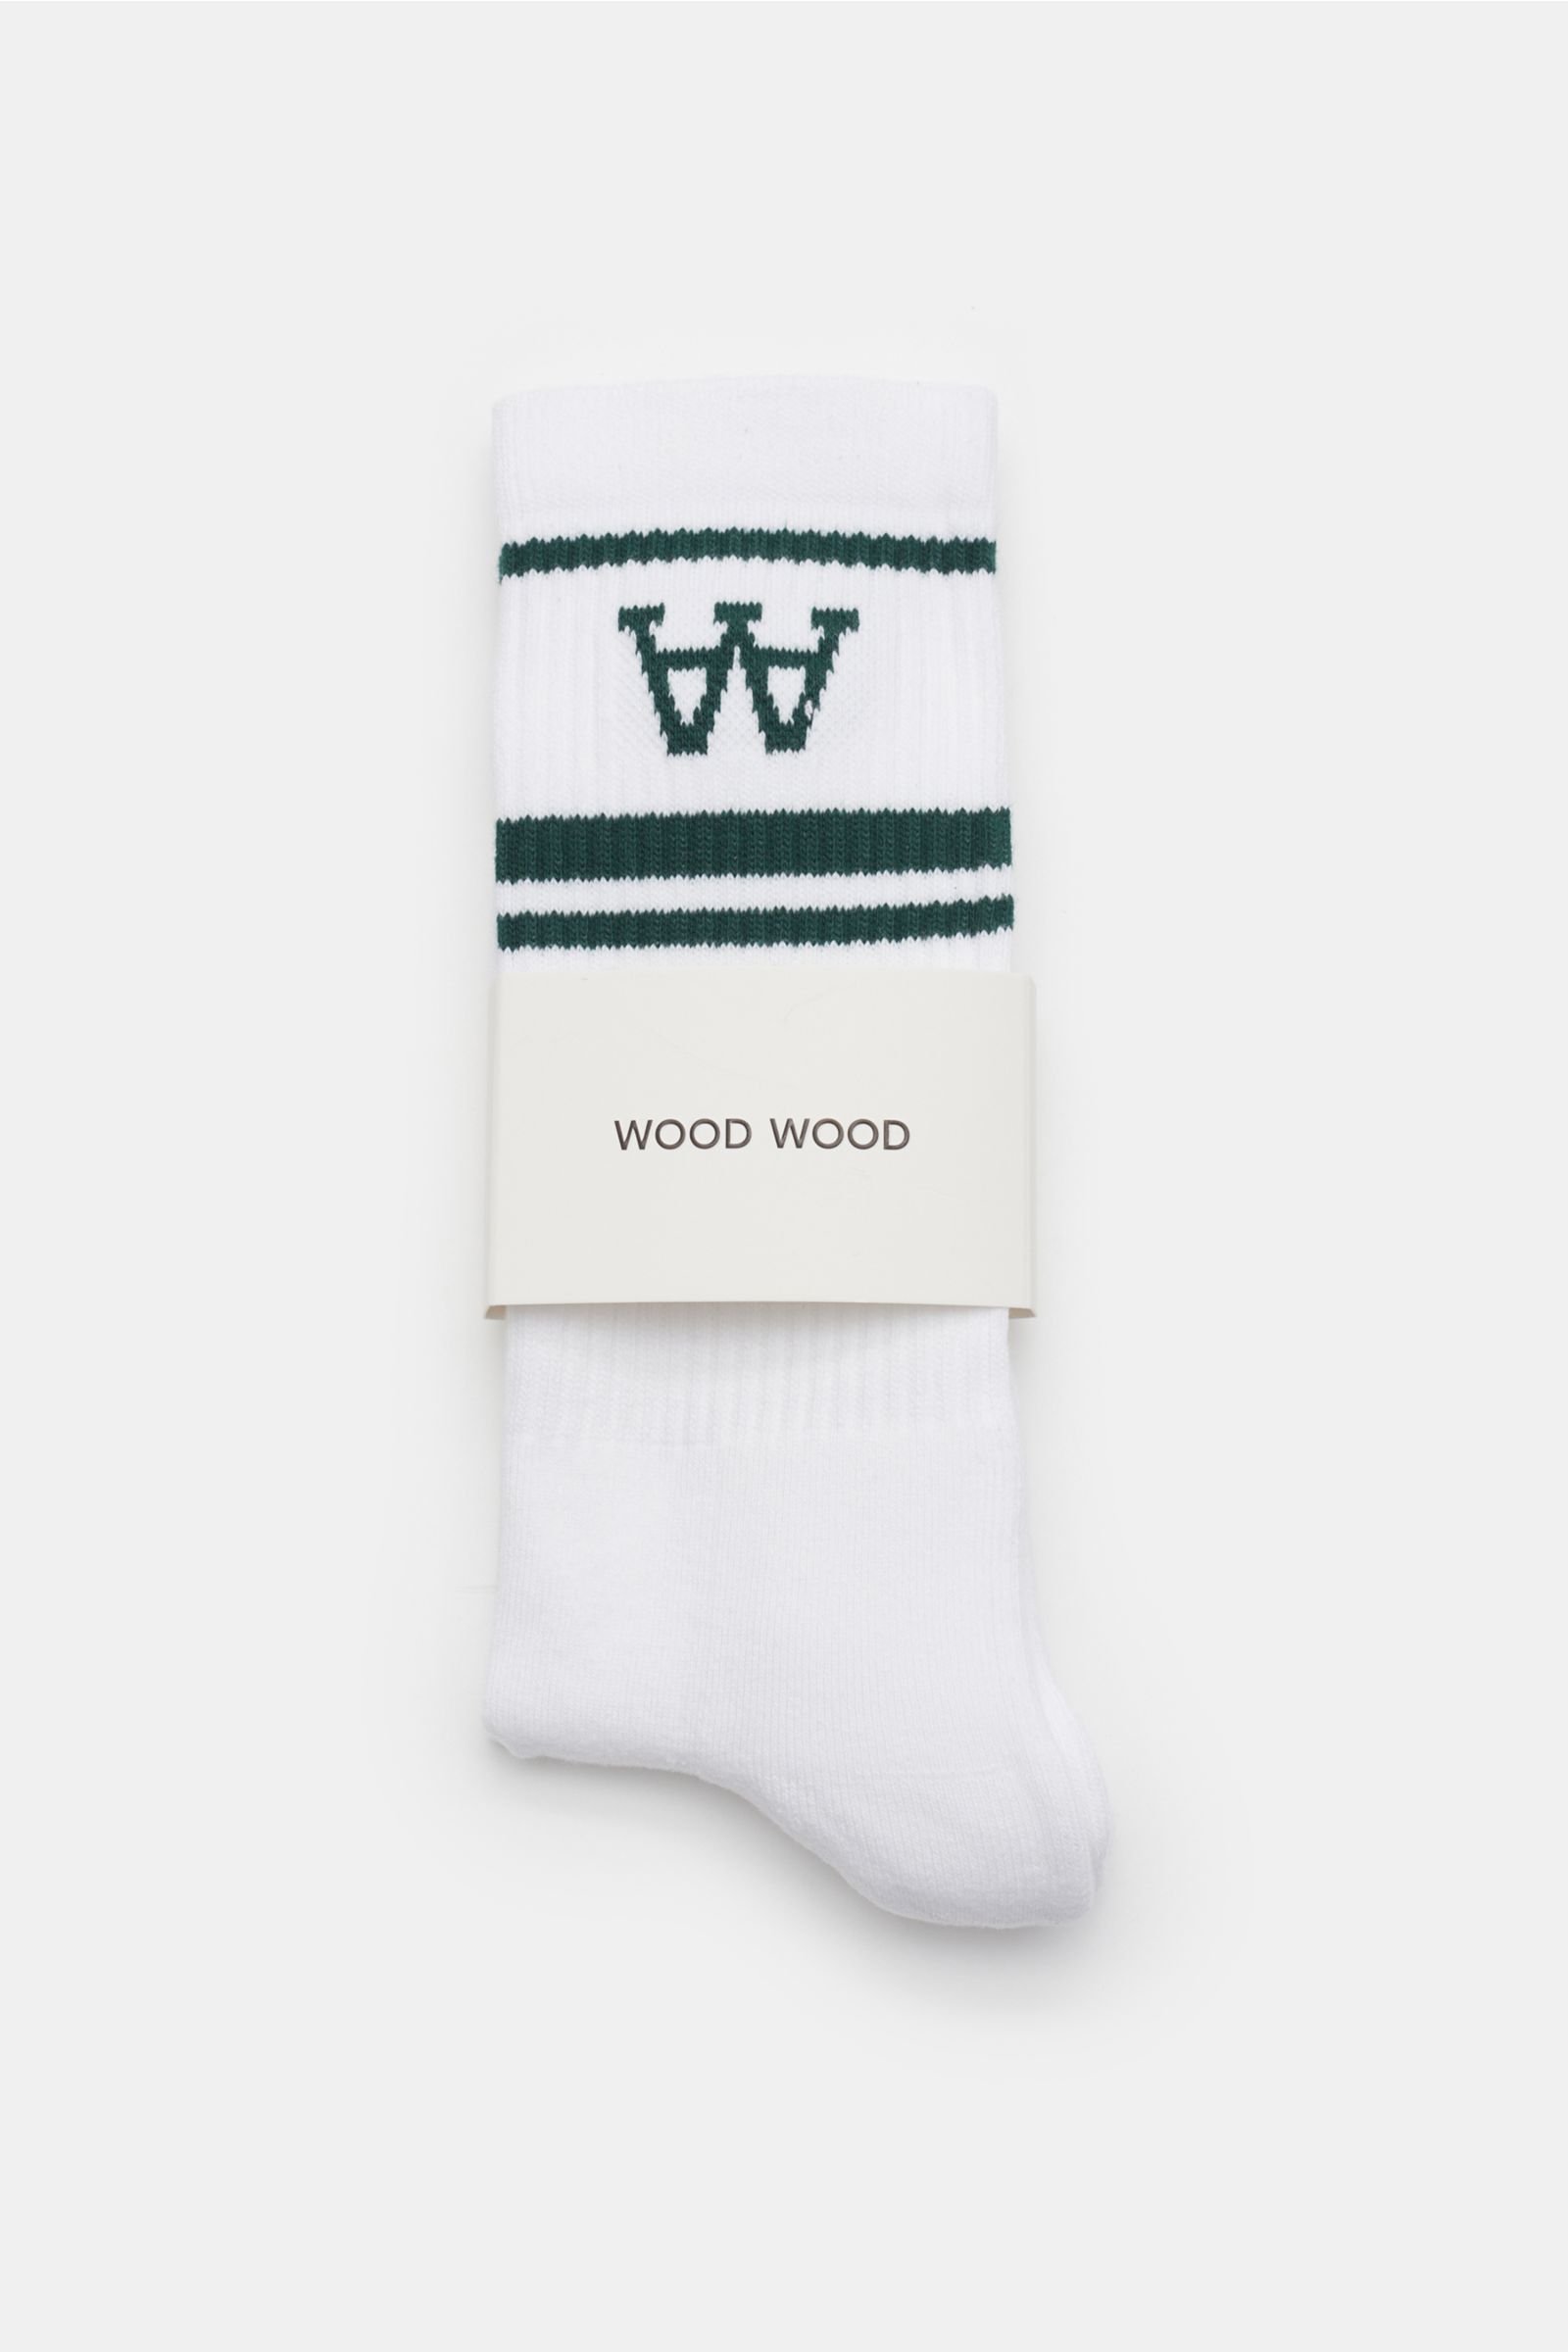 Socks pack of 2 pairs white/dark green